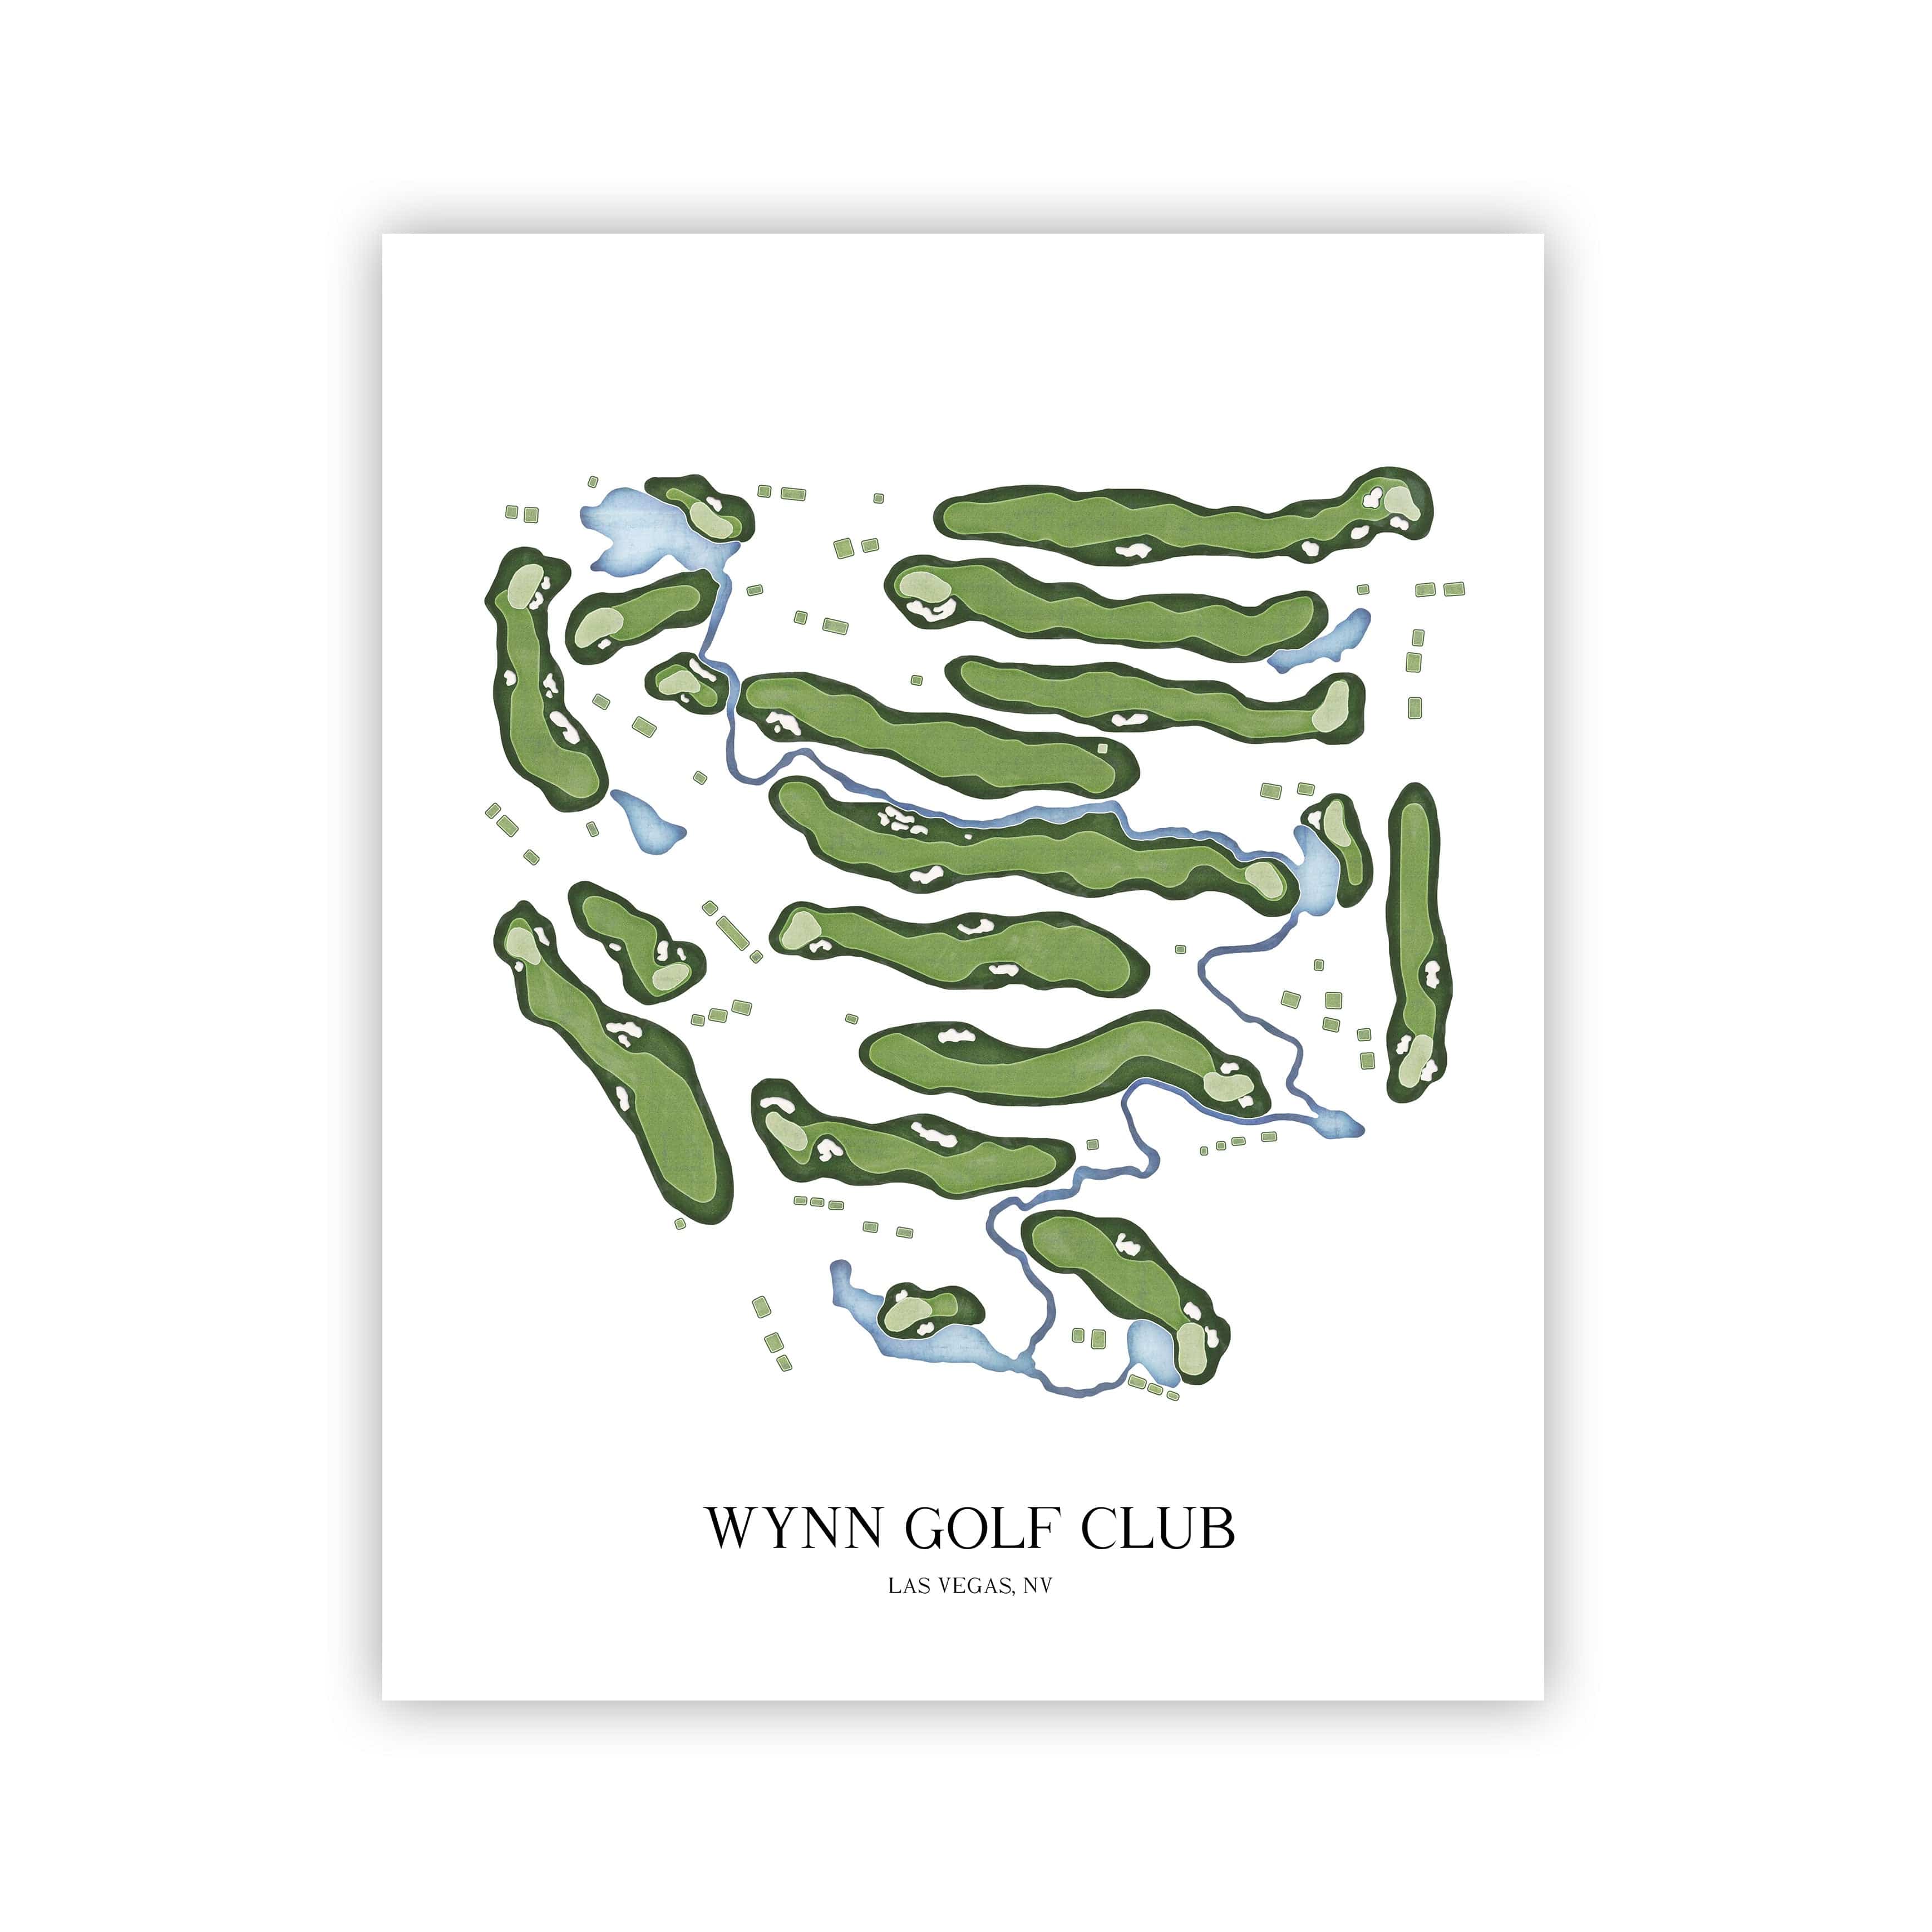 The 19th Hole Golf Shop - Golf Course Prints -  Wynn Golf Club Golf Course Map